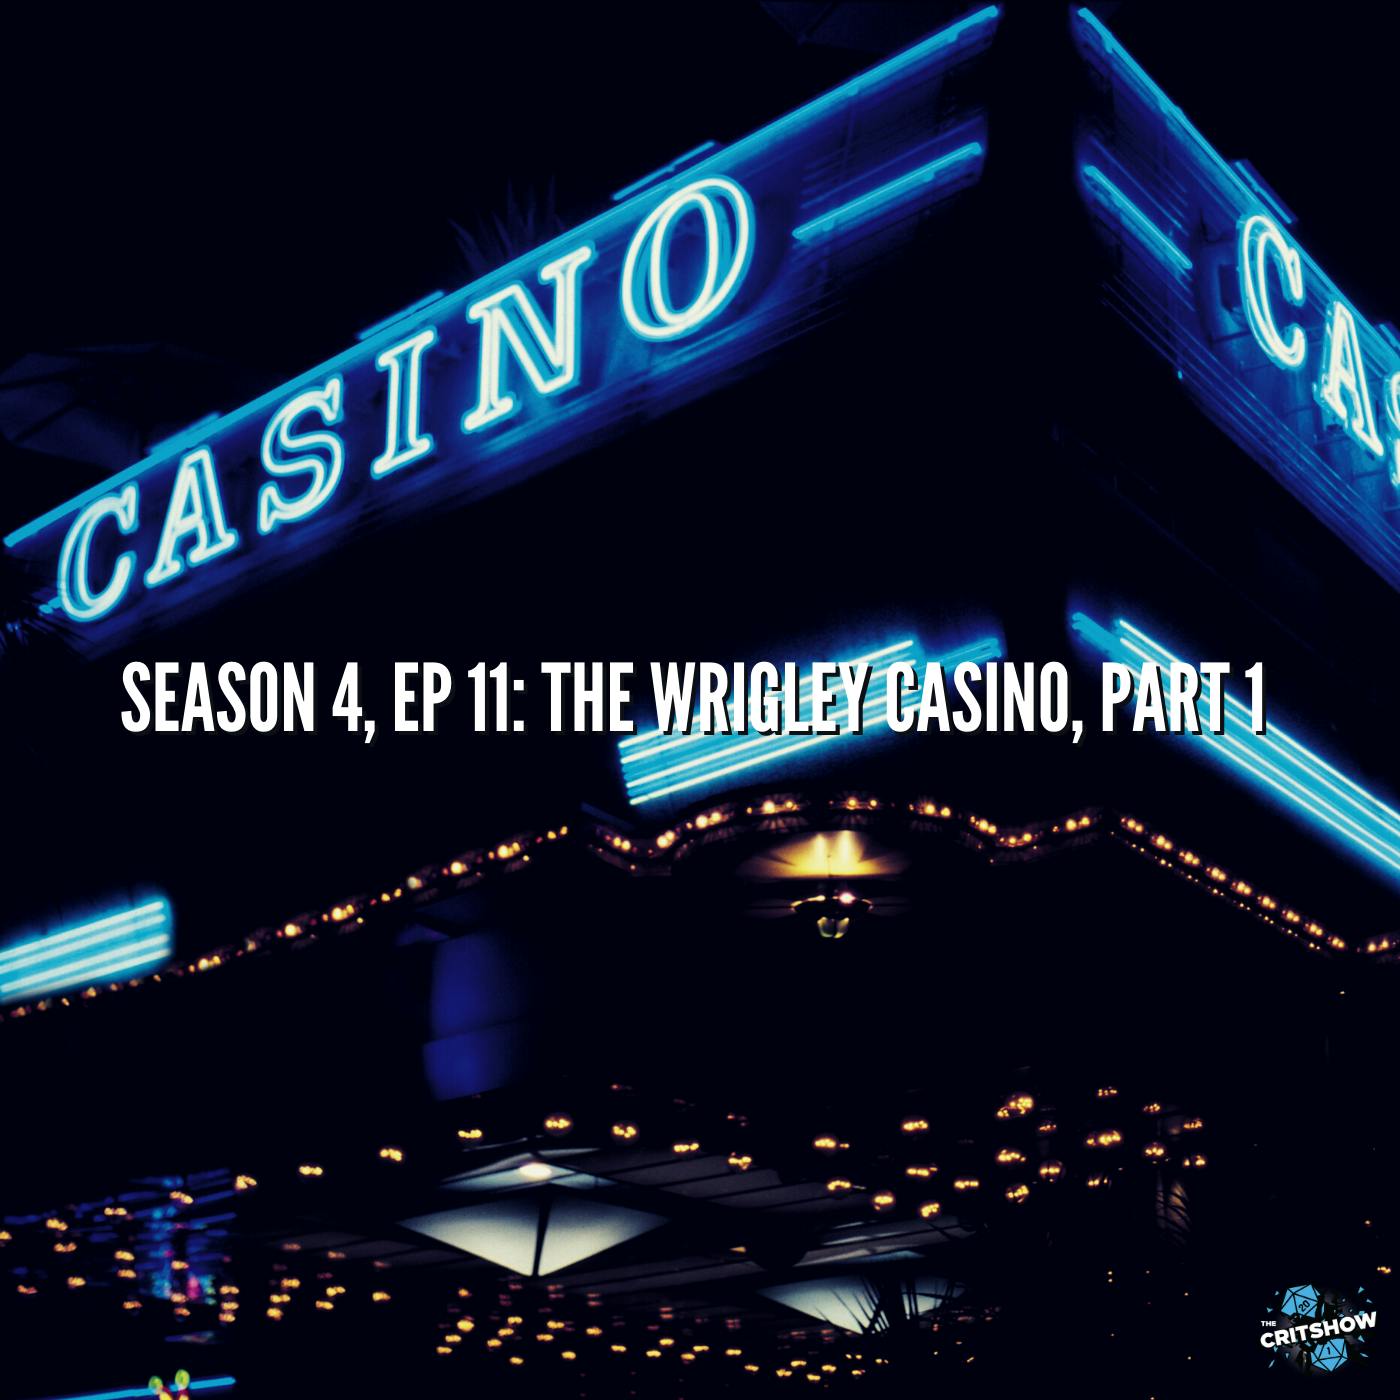 The Wrigley Casino, Part 1 (S4, E11)